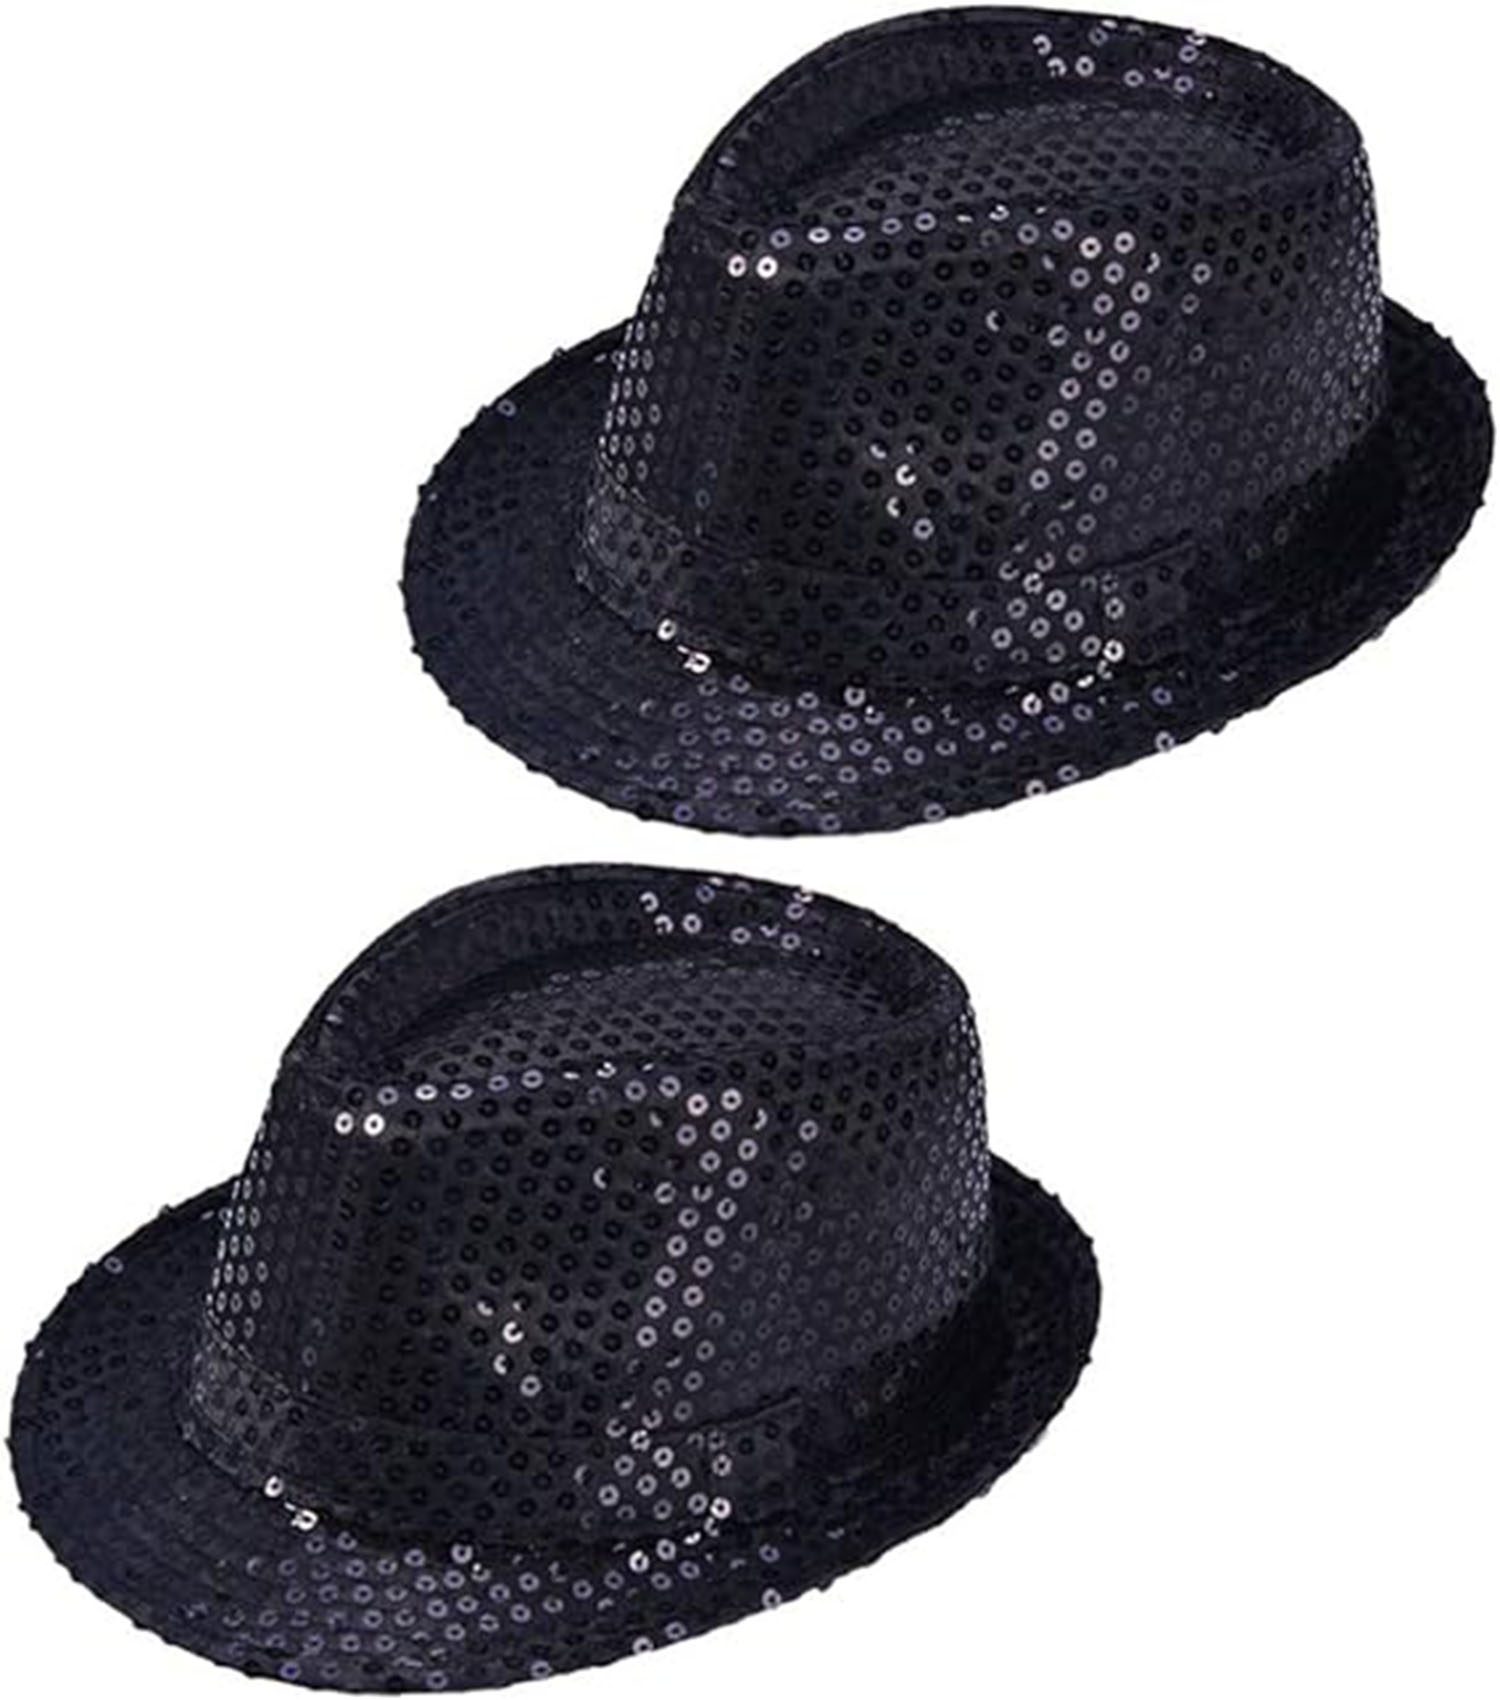 Çocuk Boy Siyah Payetli Şapka Gösteri Şapkası Michael Jackson Şapkası 54 No (Lisinya)